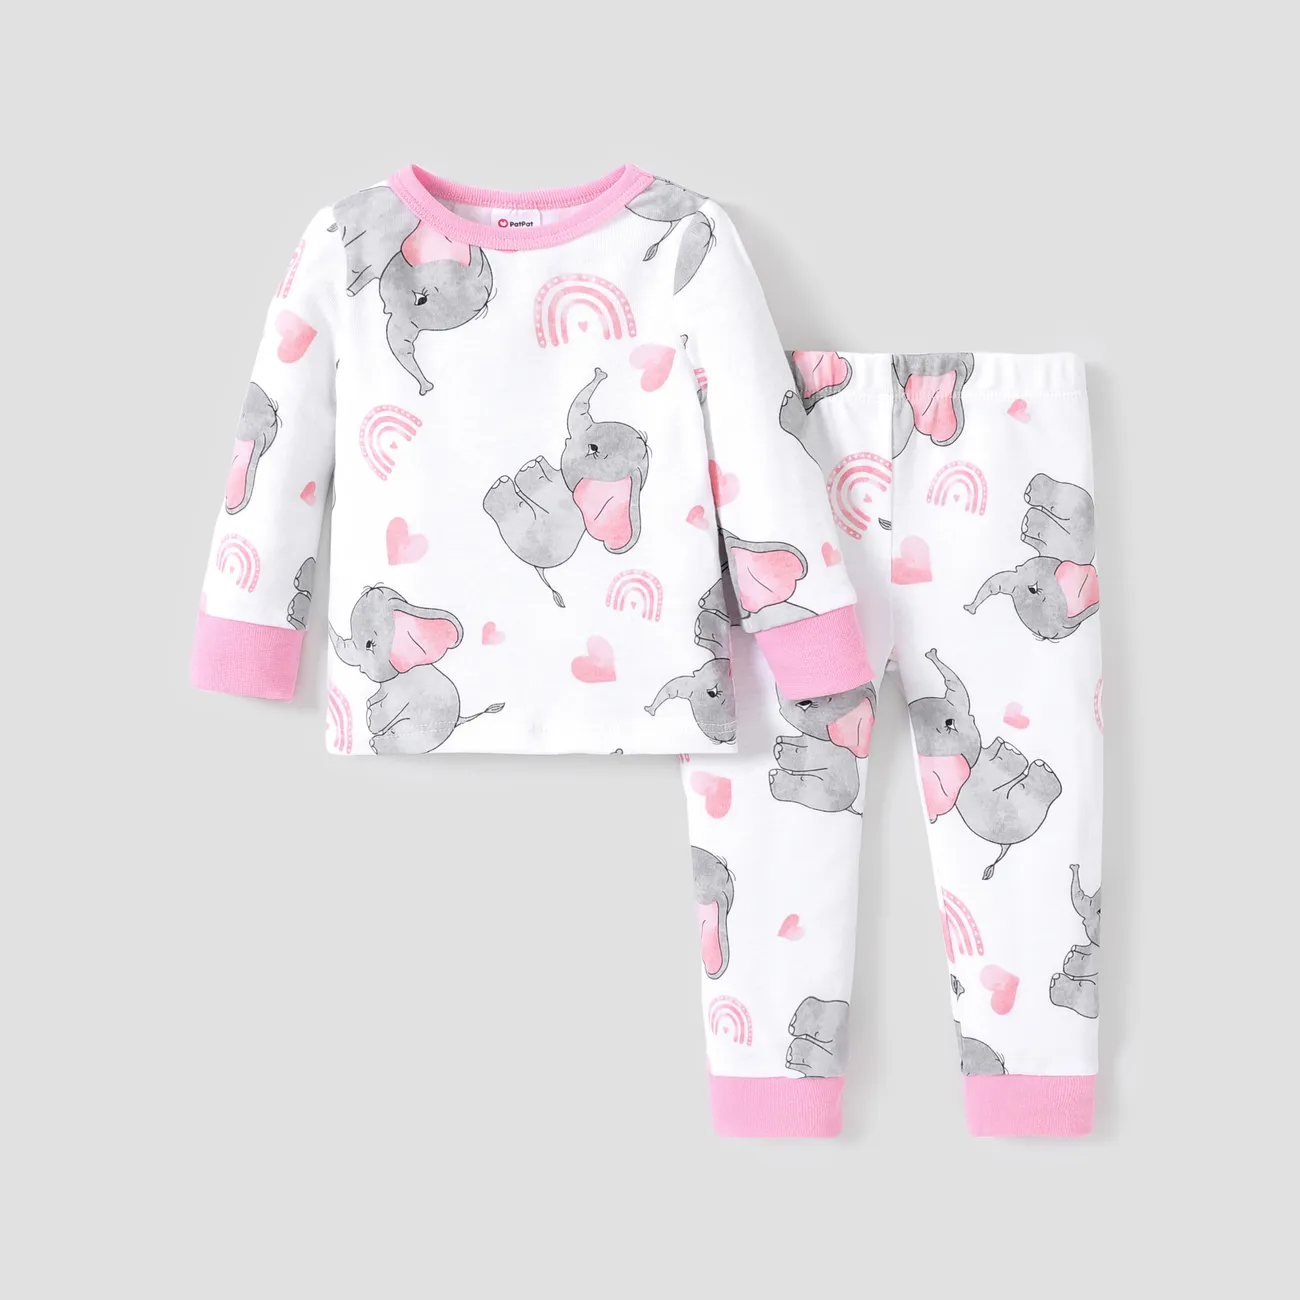 純棉緊身無性別睡衣套裝 - 兒童基礎款式 粉色 big image 1